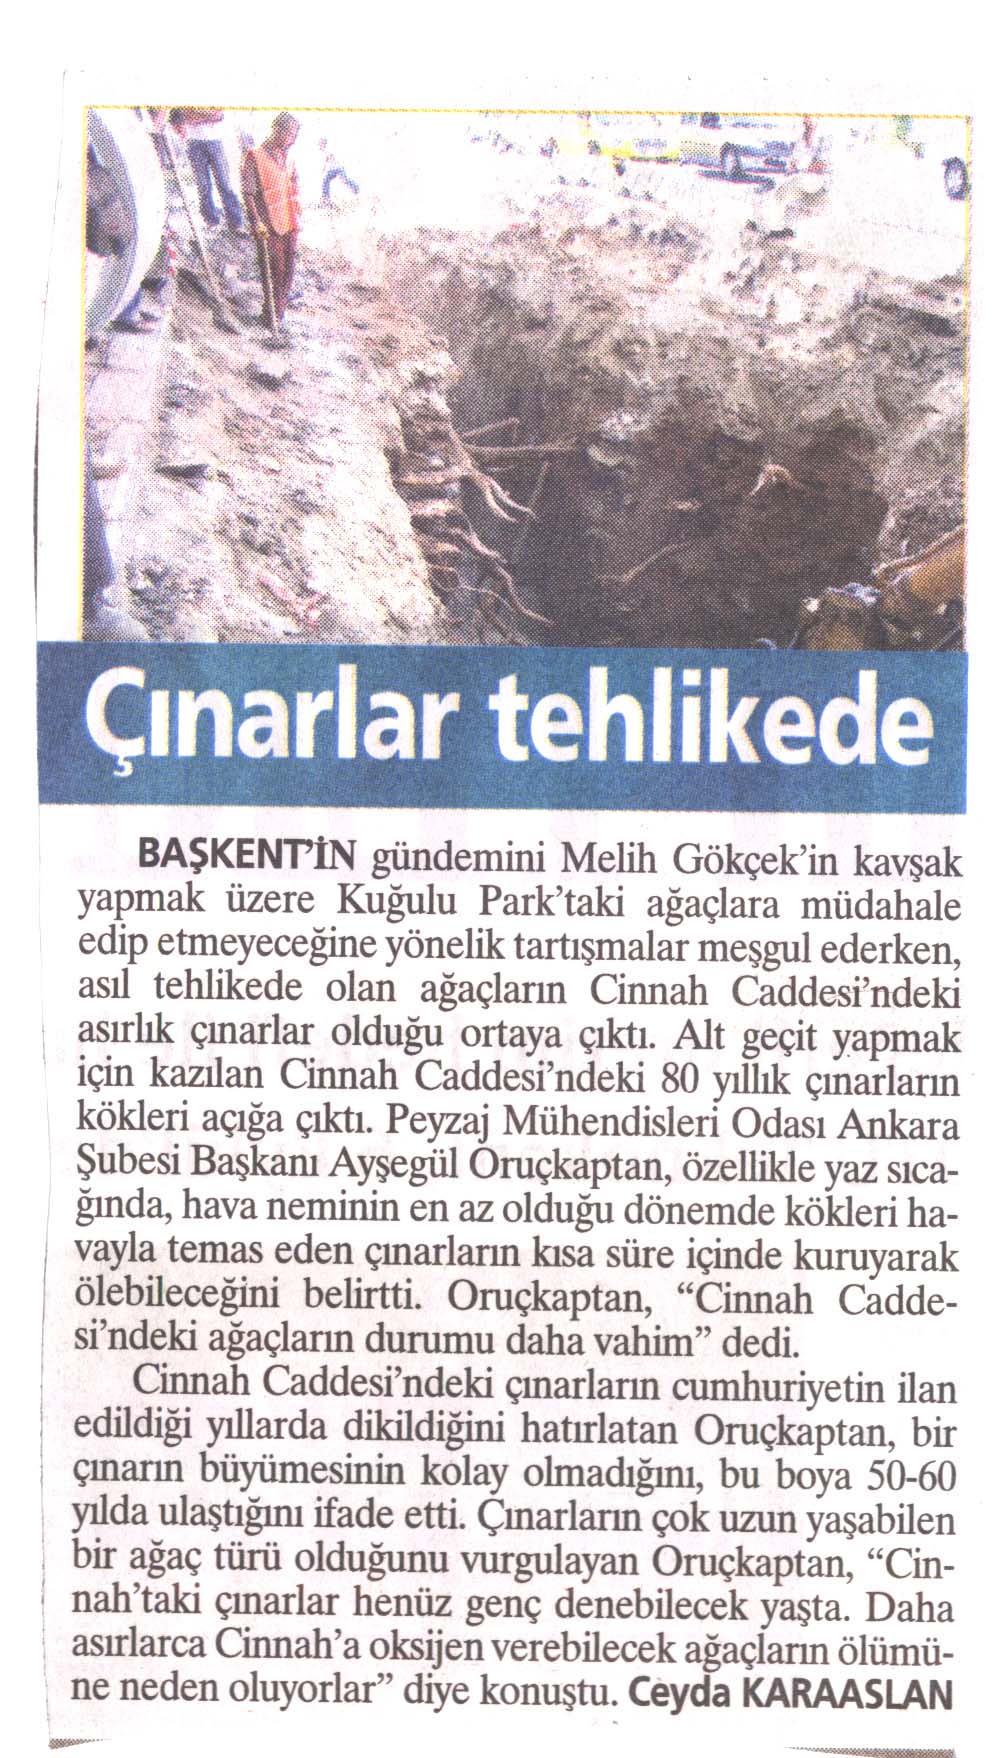 KUĞULU'NUN KAVAKLARI KURTULDU CİNNAH'IN ÇINARLARI TEHLİKEDE! 30.08.2006/SABAH ANKARA